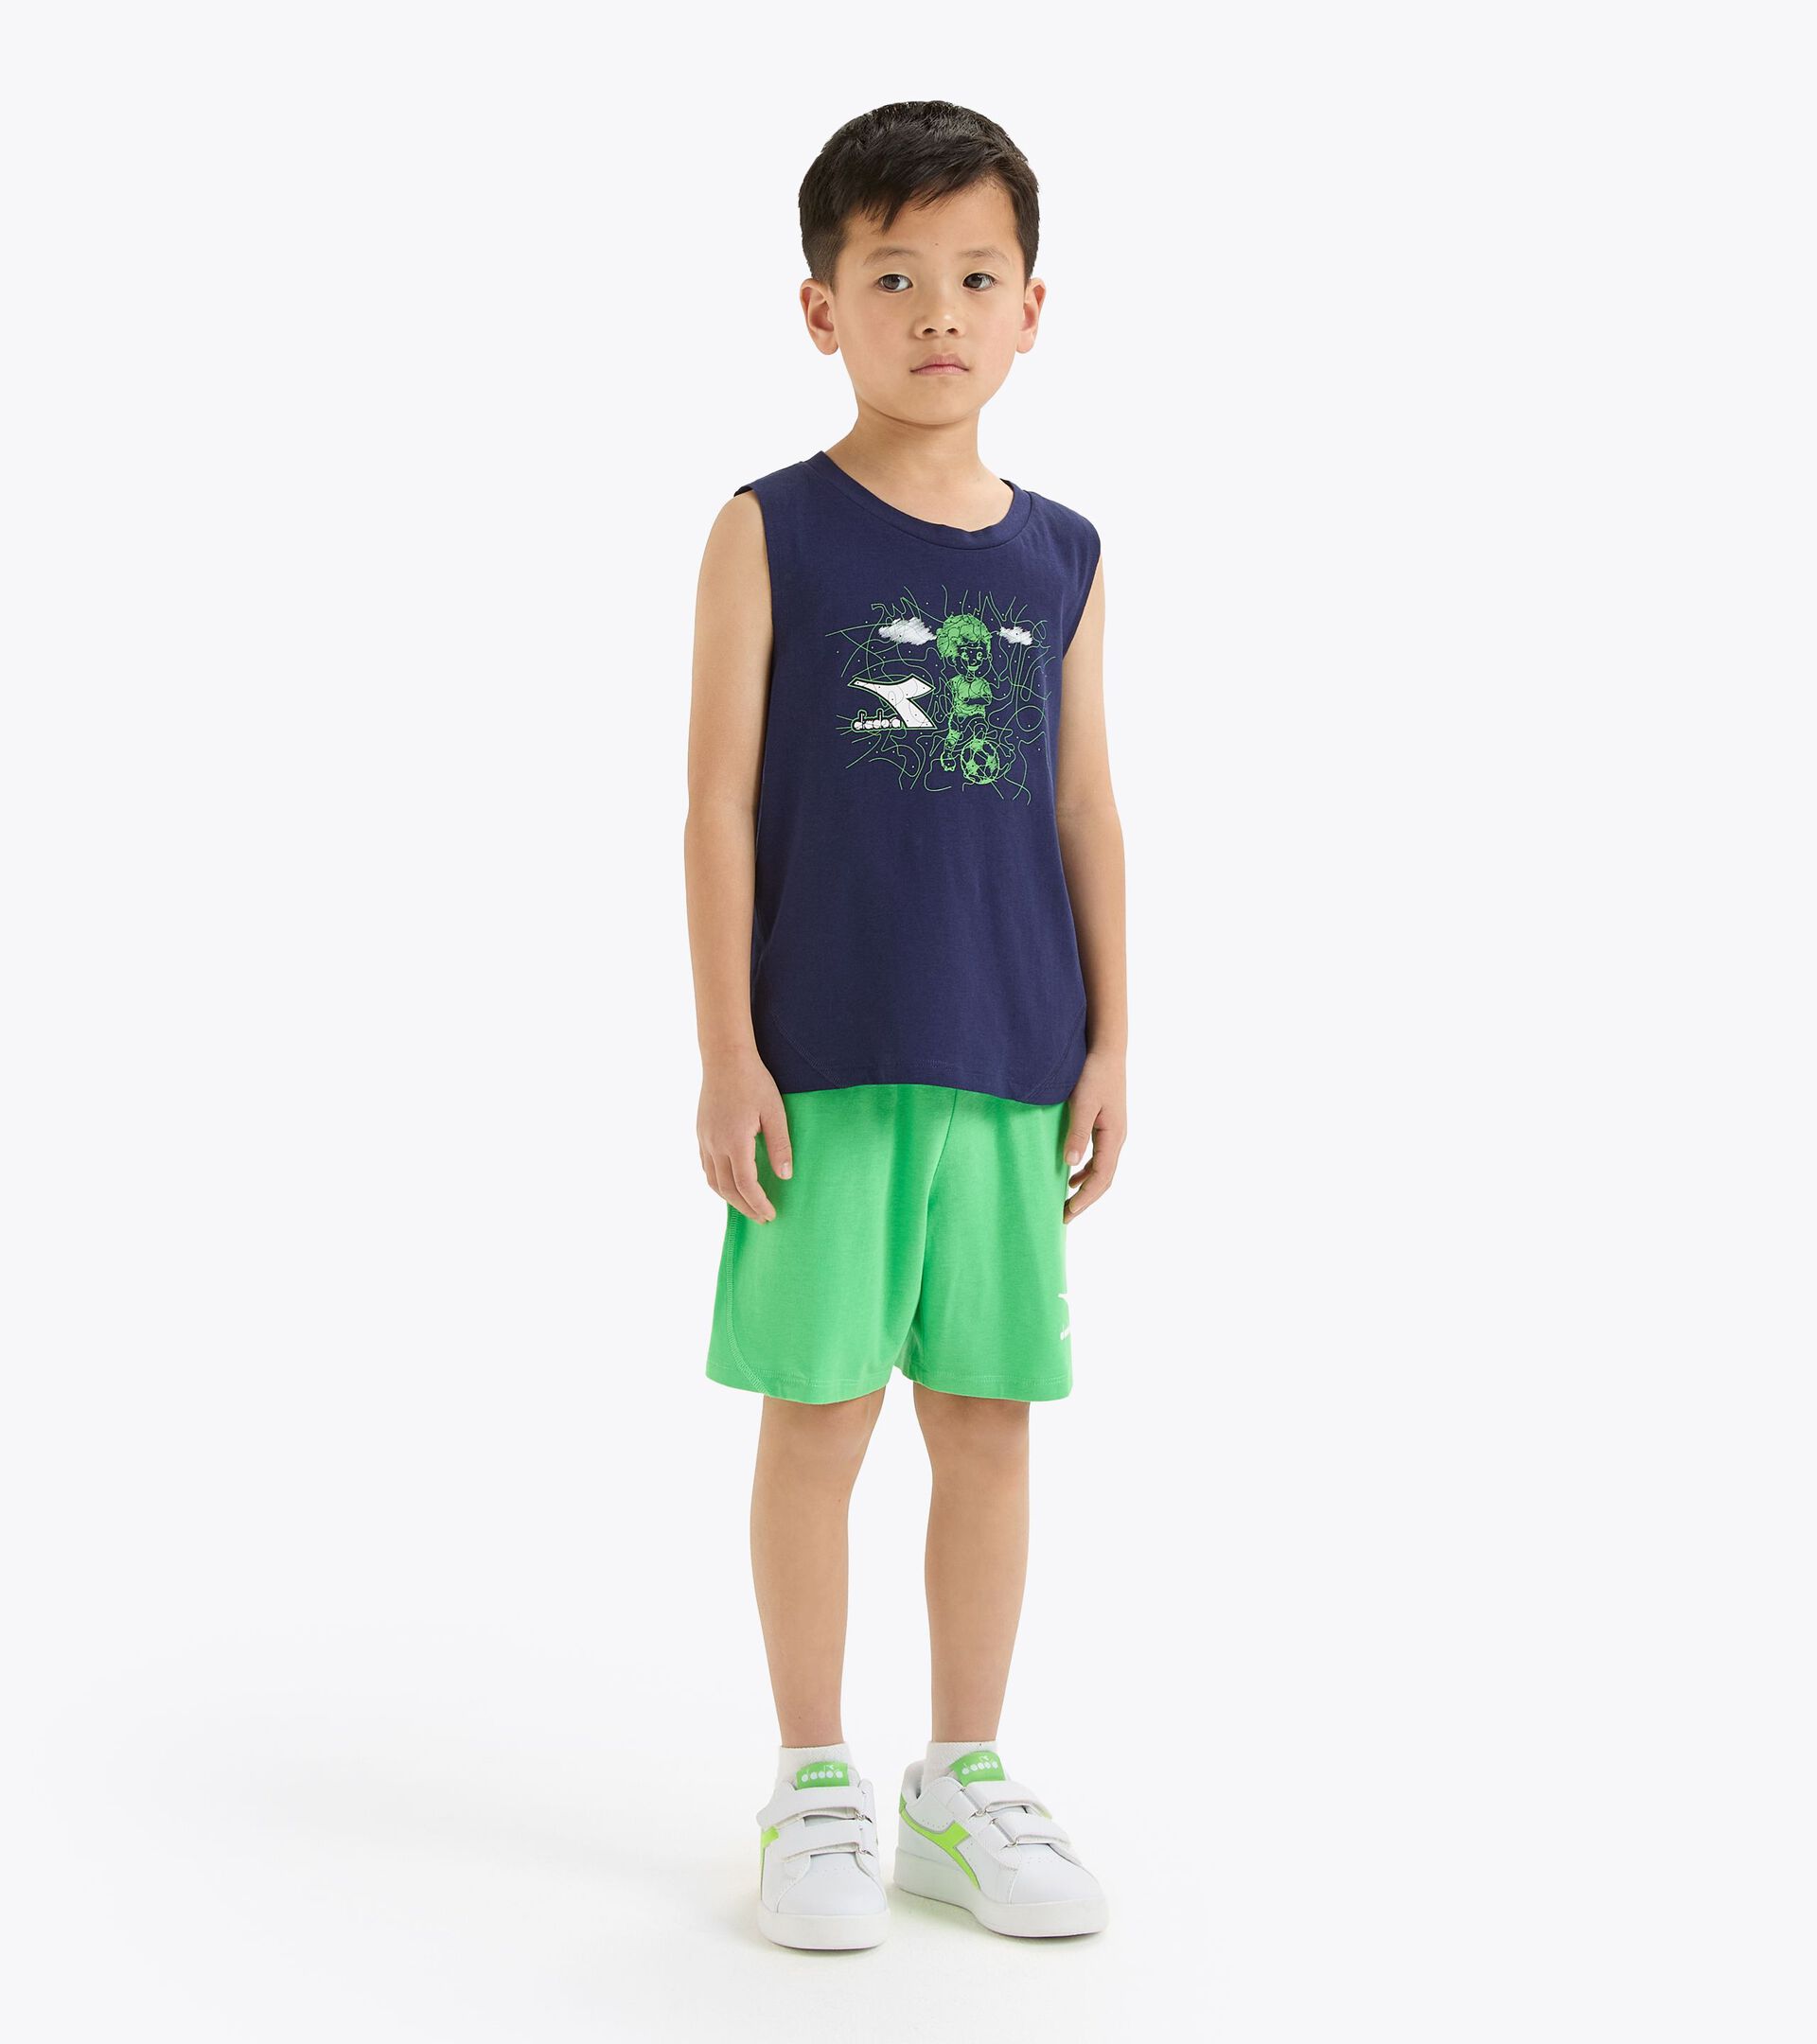 Conjunto deportivo - Camiseta sin mangas y pantalones cortos - Niños y adolescentes JB. SET SL RIDDLE AZUL CHAQUETON - Diadora